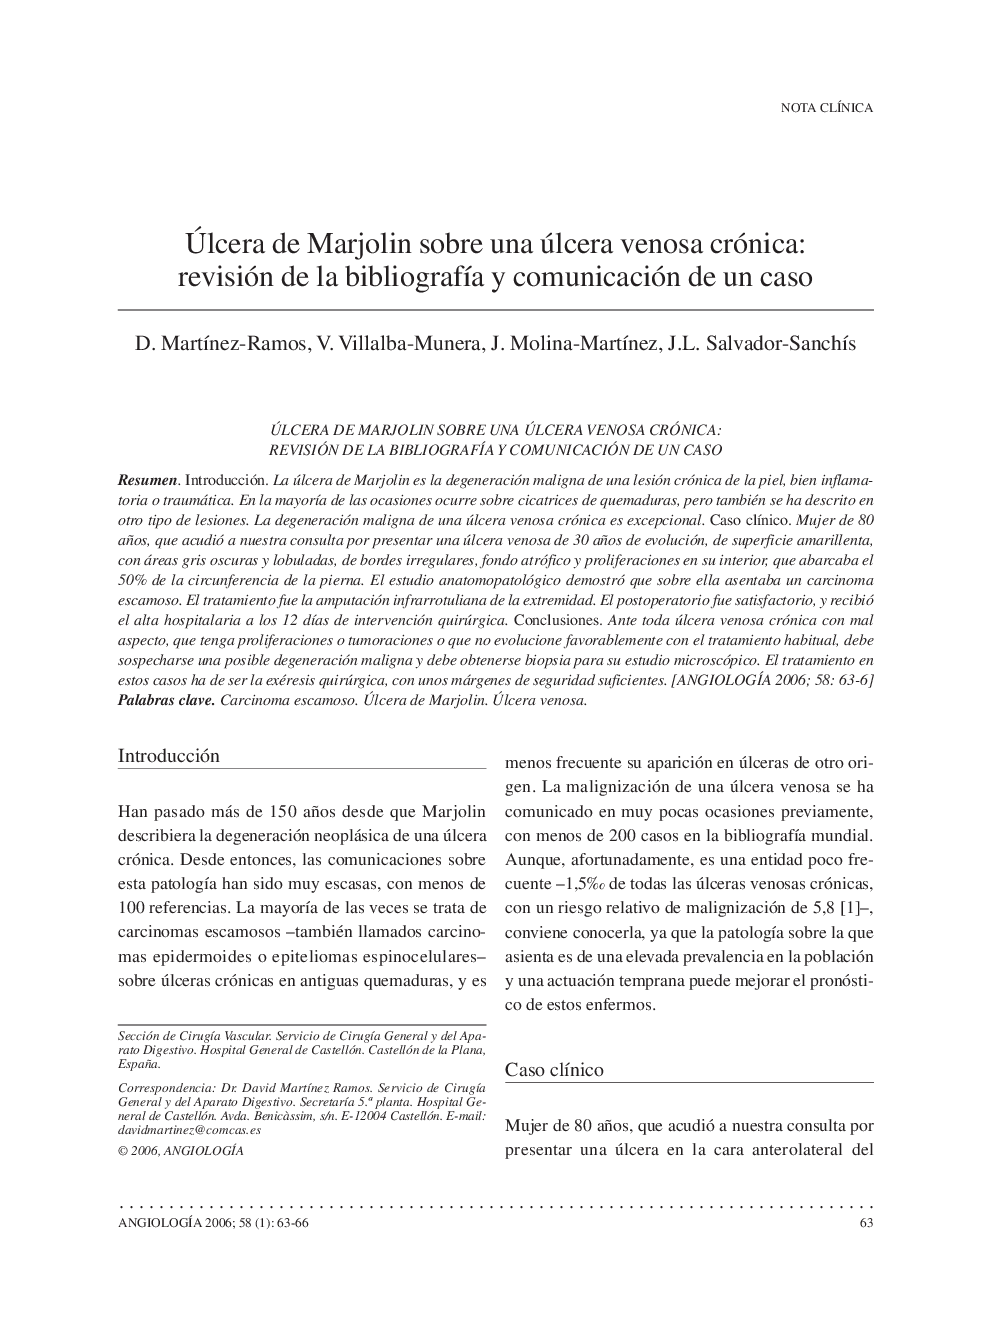 Ãlcera de marjolin sobre una úlcera venosa crónica: revisión de la bibliografÃ­a y comunicación de un caso